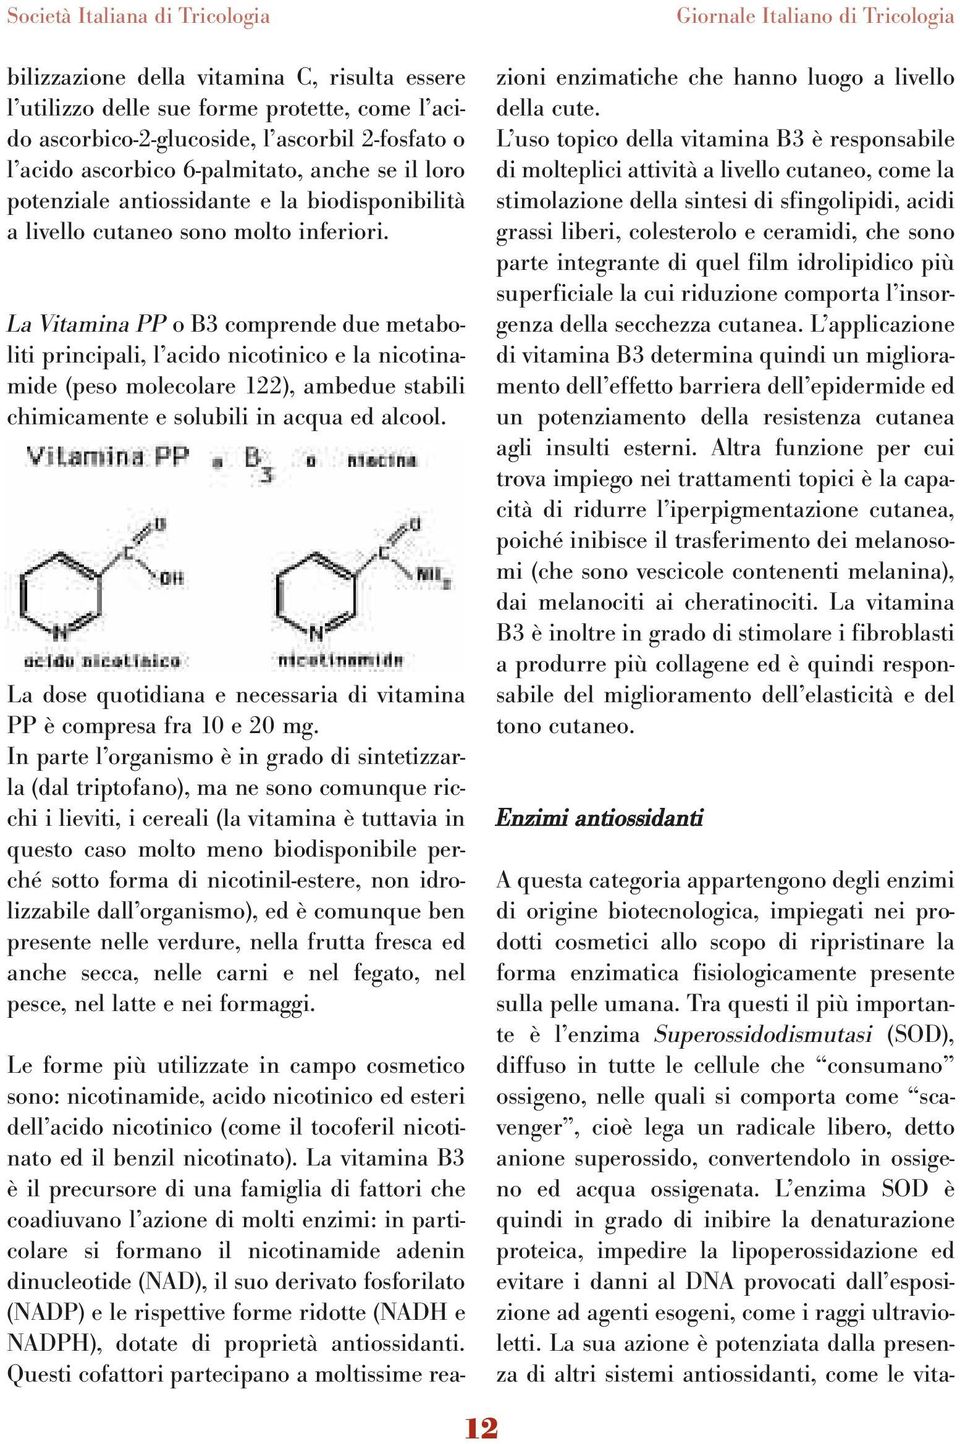 La Vitamina PP o B3 comprende due metaboliti principali, l acido nicotinico e la nicotinamide (peso molecolare 122), ambedue stabili chimicamente e solubili in acqua ed alcool.